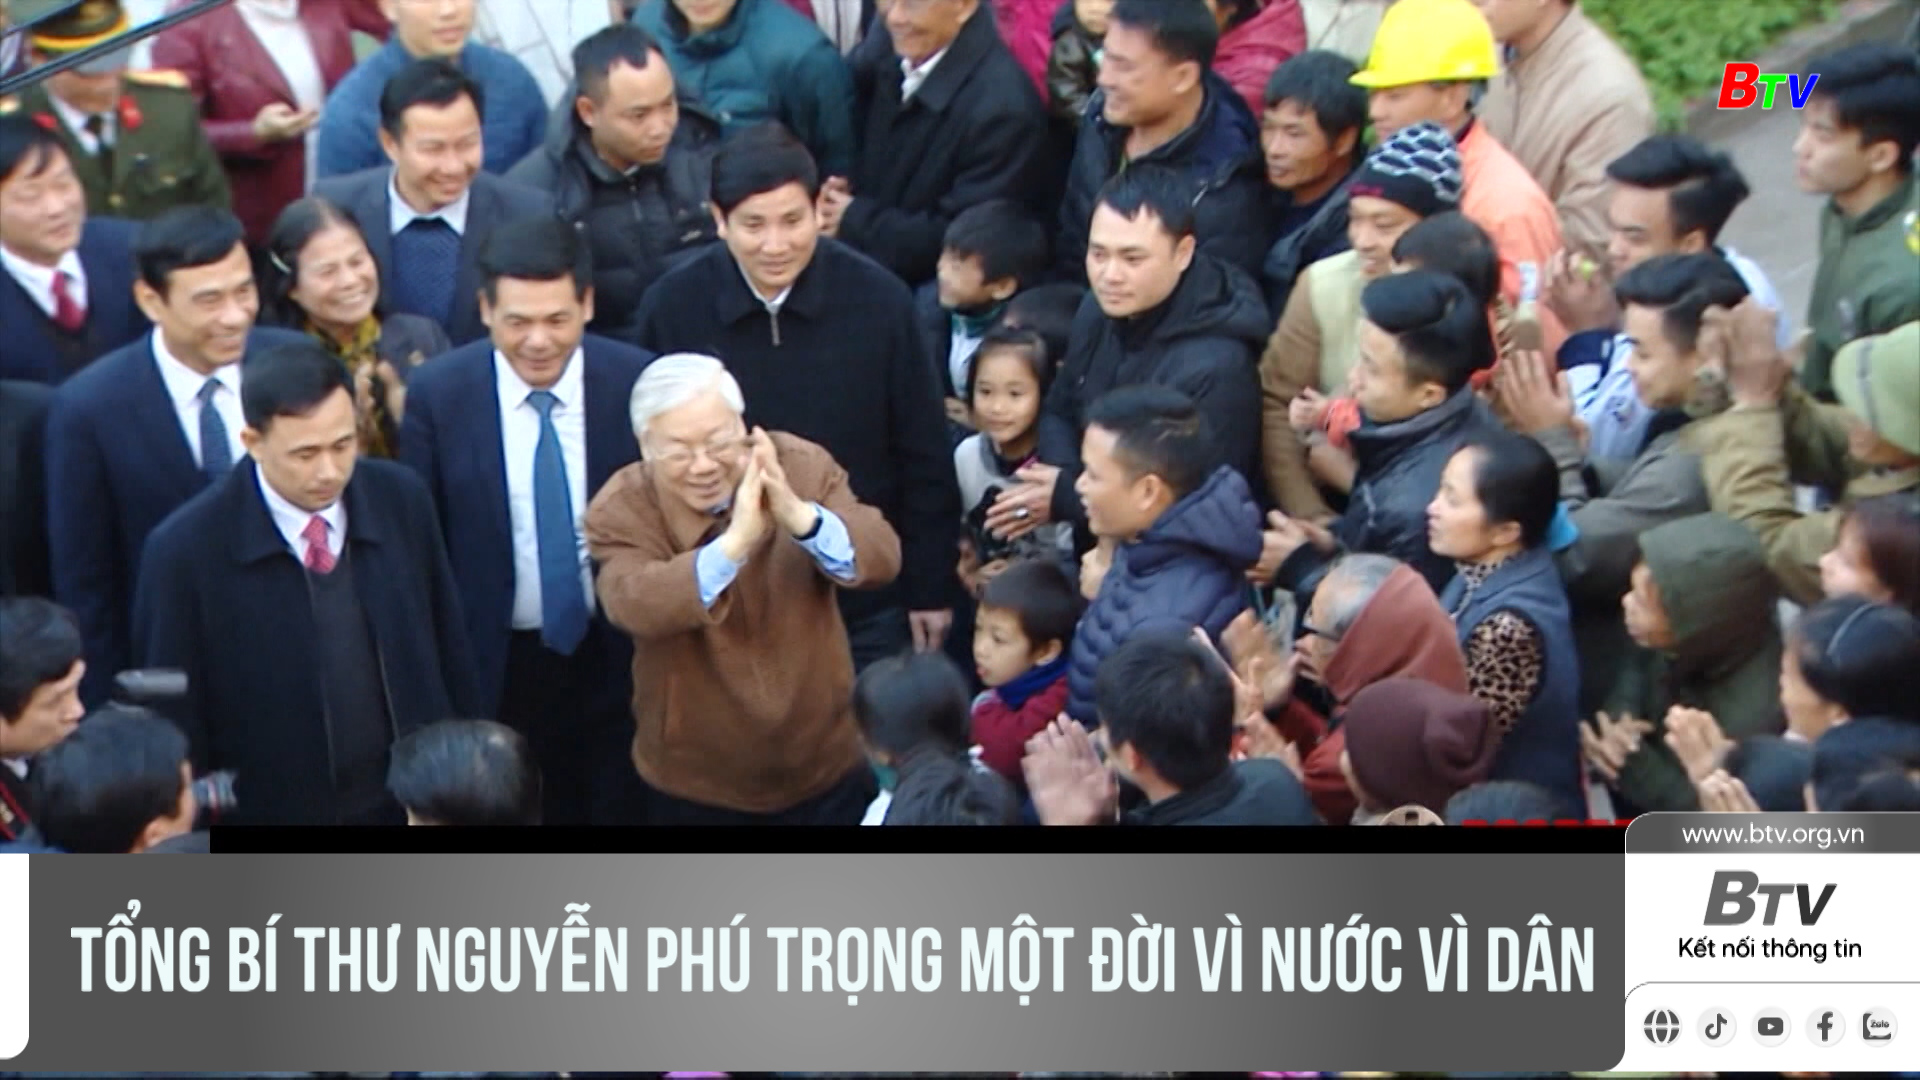 Tổng Bí thư Nguyễn Phú Trọng một đời vì nước vì dân	